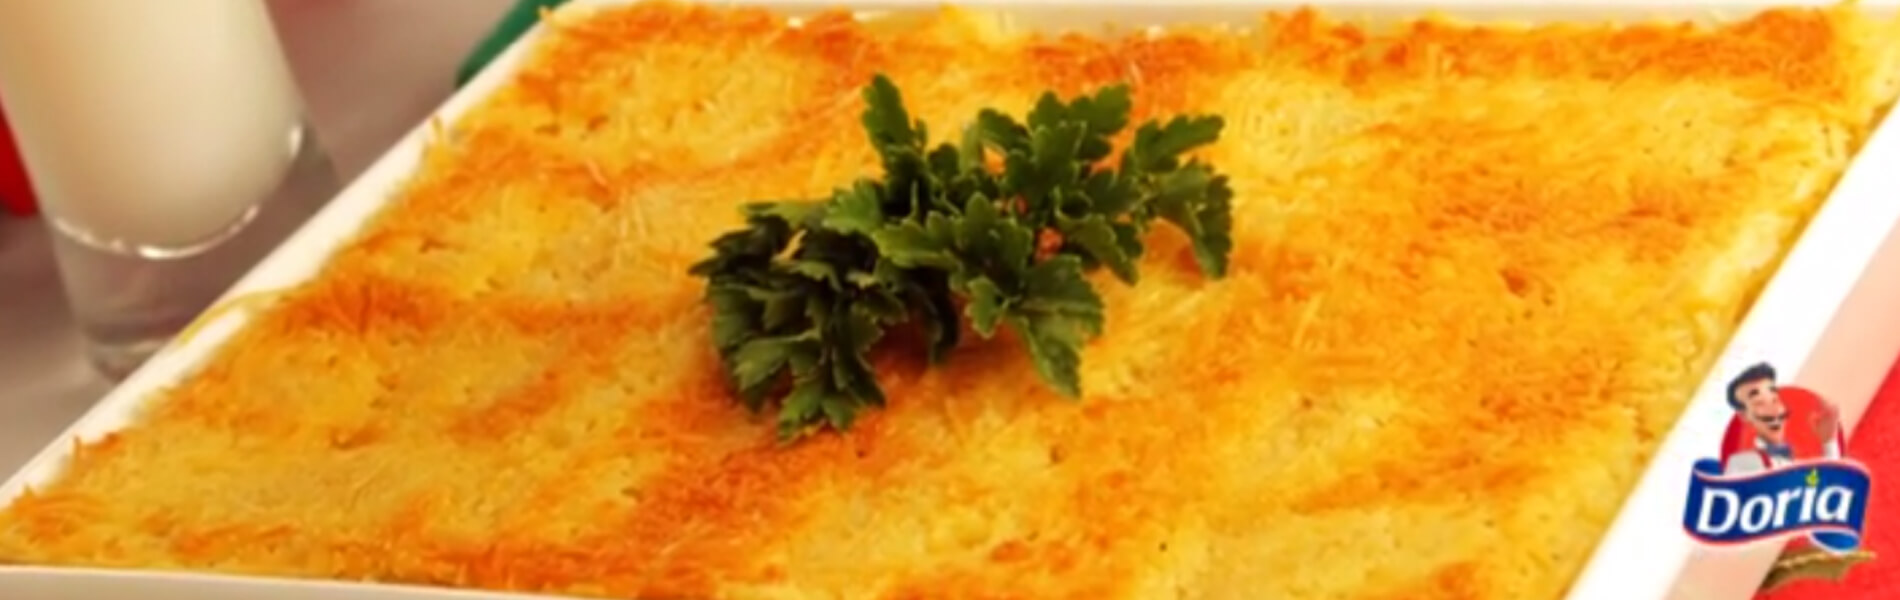 Lasagna Doria con atún y verduras